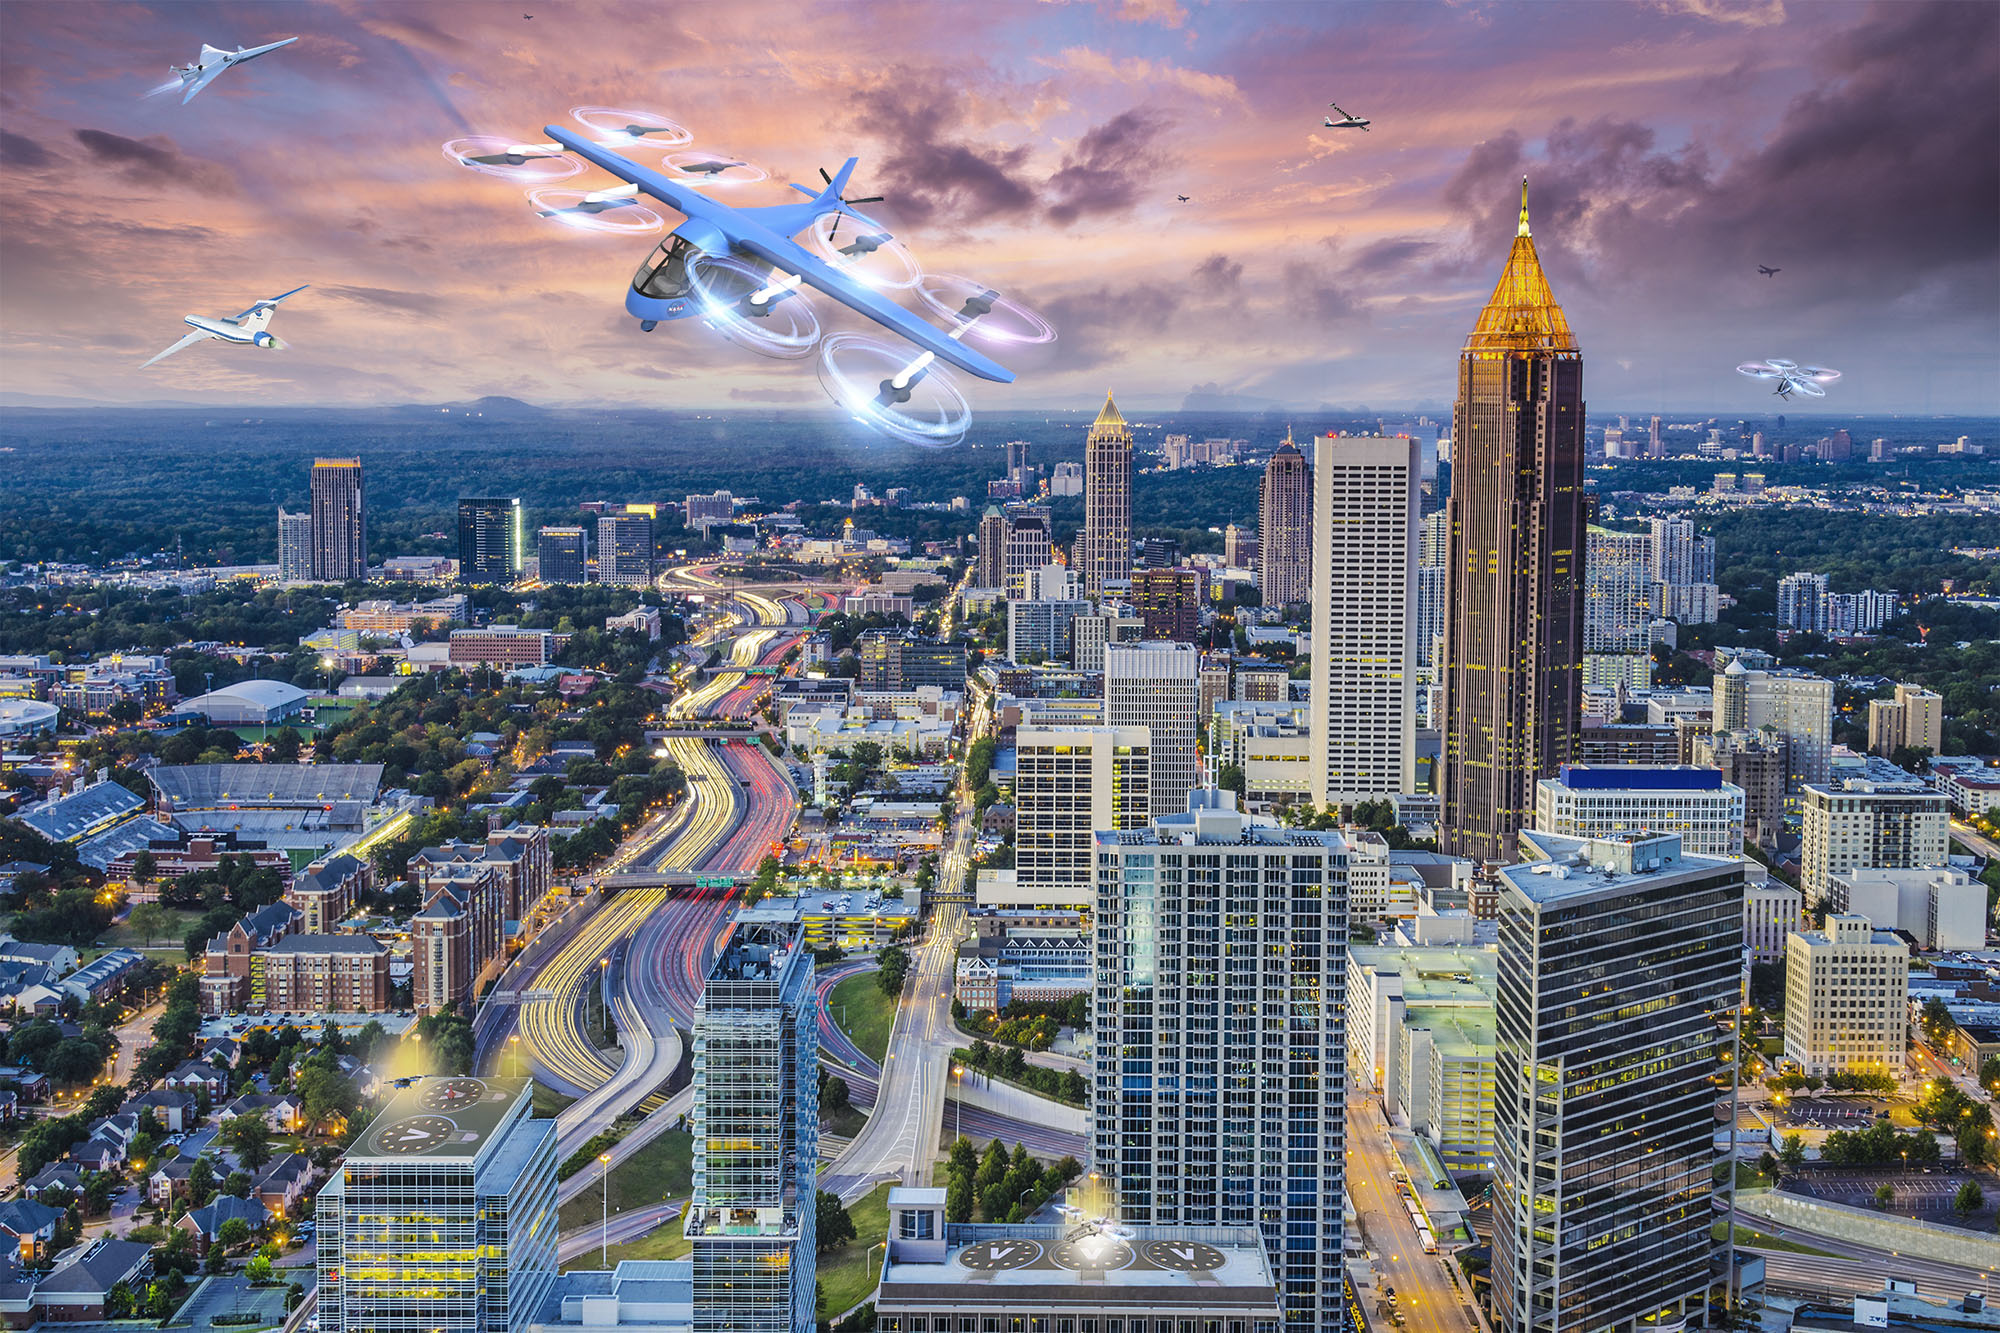 无人机和飞行汽车在亚特兰大市中心嗡嗡作响，这是美国宇航局(NASA)一个投机性项目的一部分